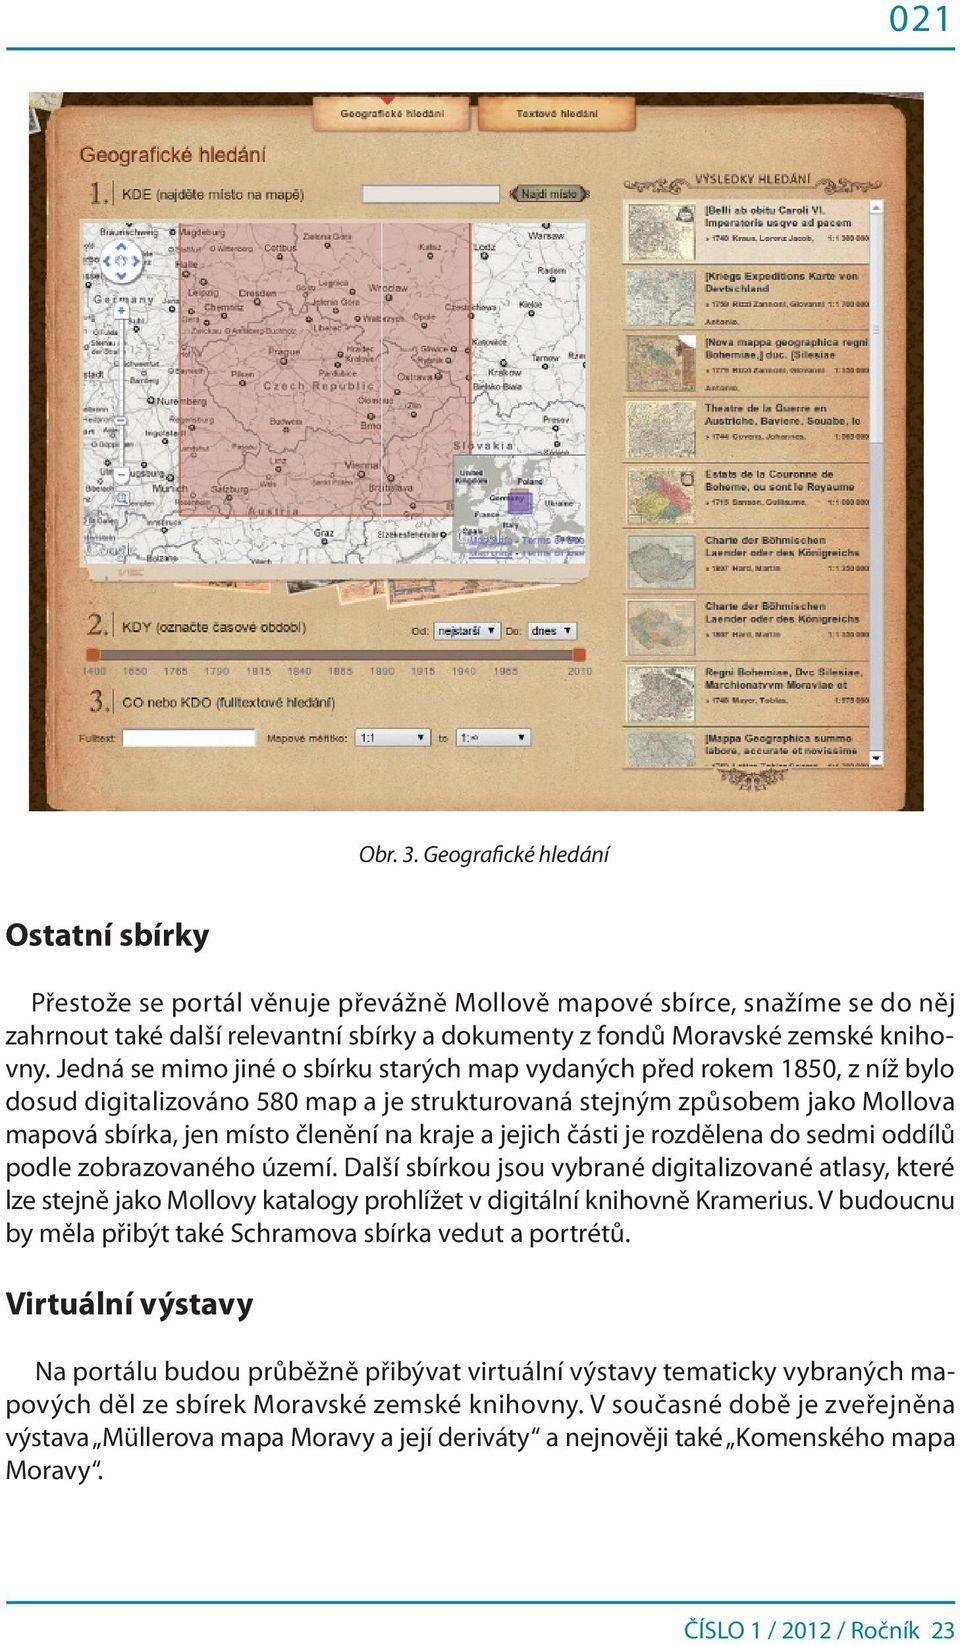 Jedná se mimo jiné o sbírku starých map vydaných před rokem 1850, z níž bylo dosud digitalizováno 580 map a je strukturovaná stejným způsobem jako Mollova mapová sbírka, jen místo členění na kraje a